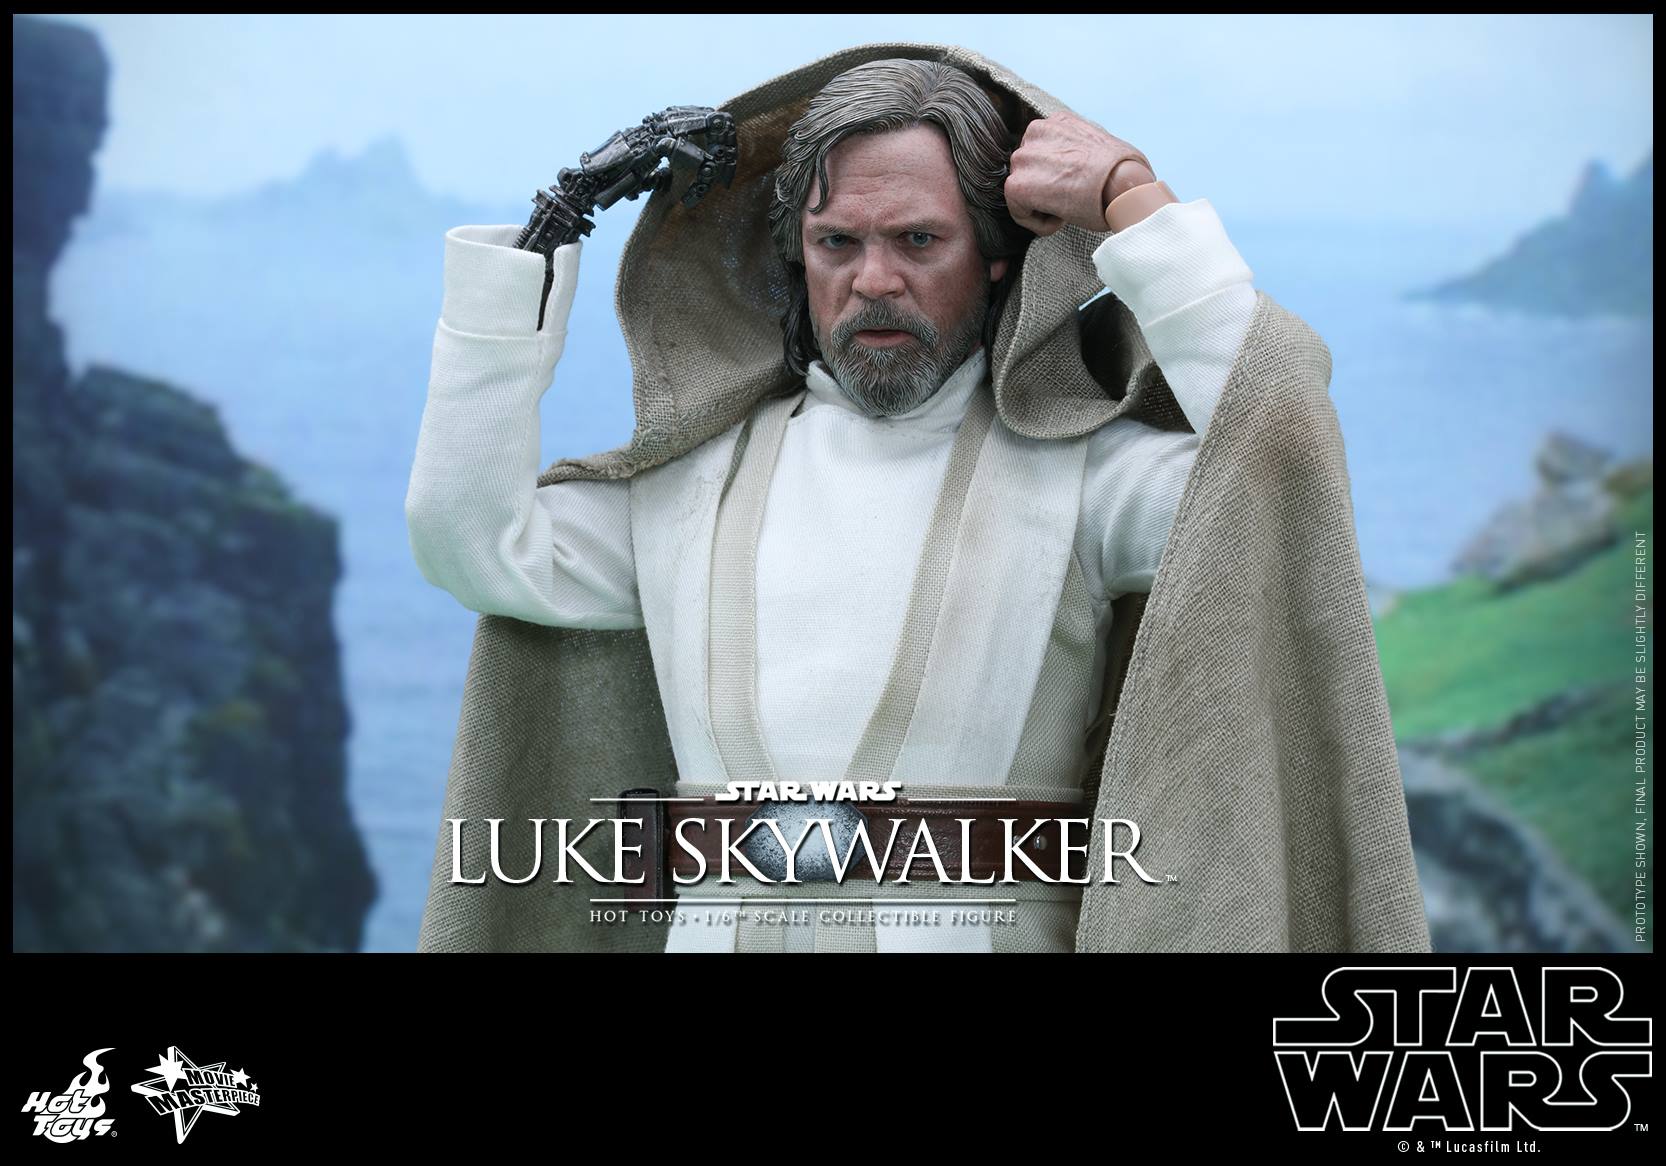 swfahtluke9 Luke Skywalker Star Wars: The Force Awakens Hot Toys Action Figure Revealed